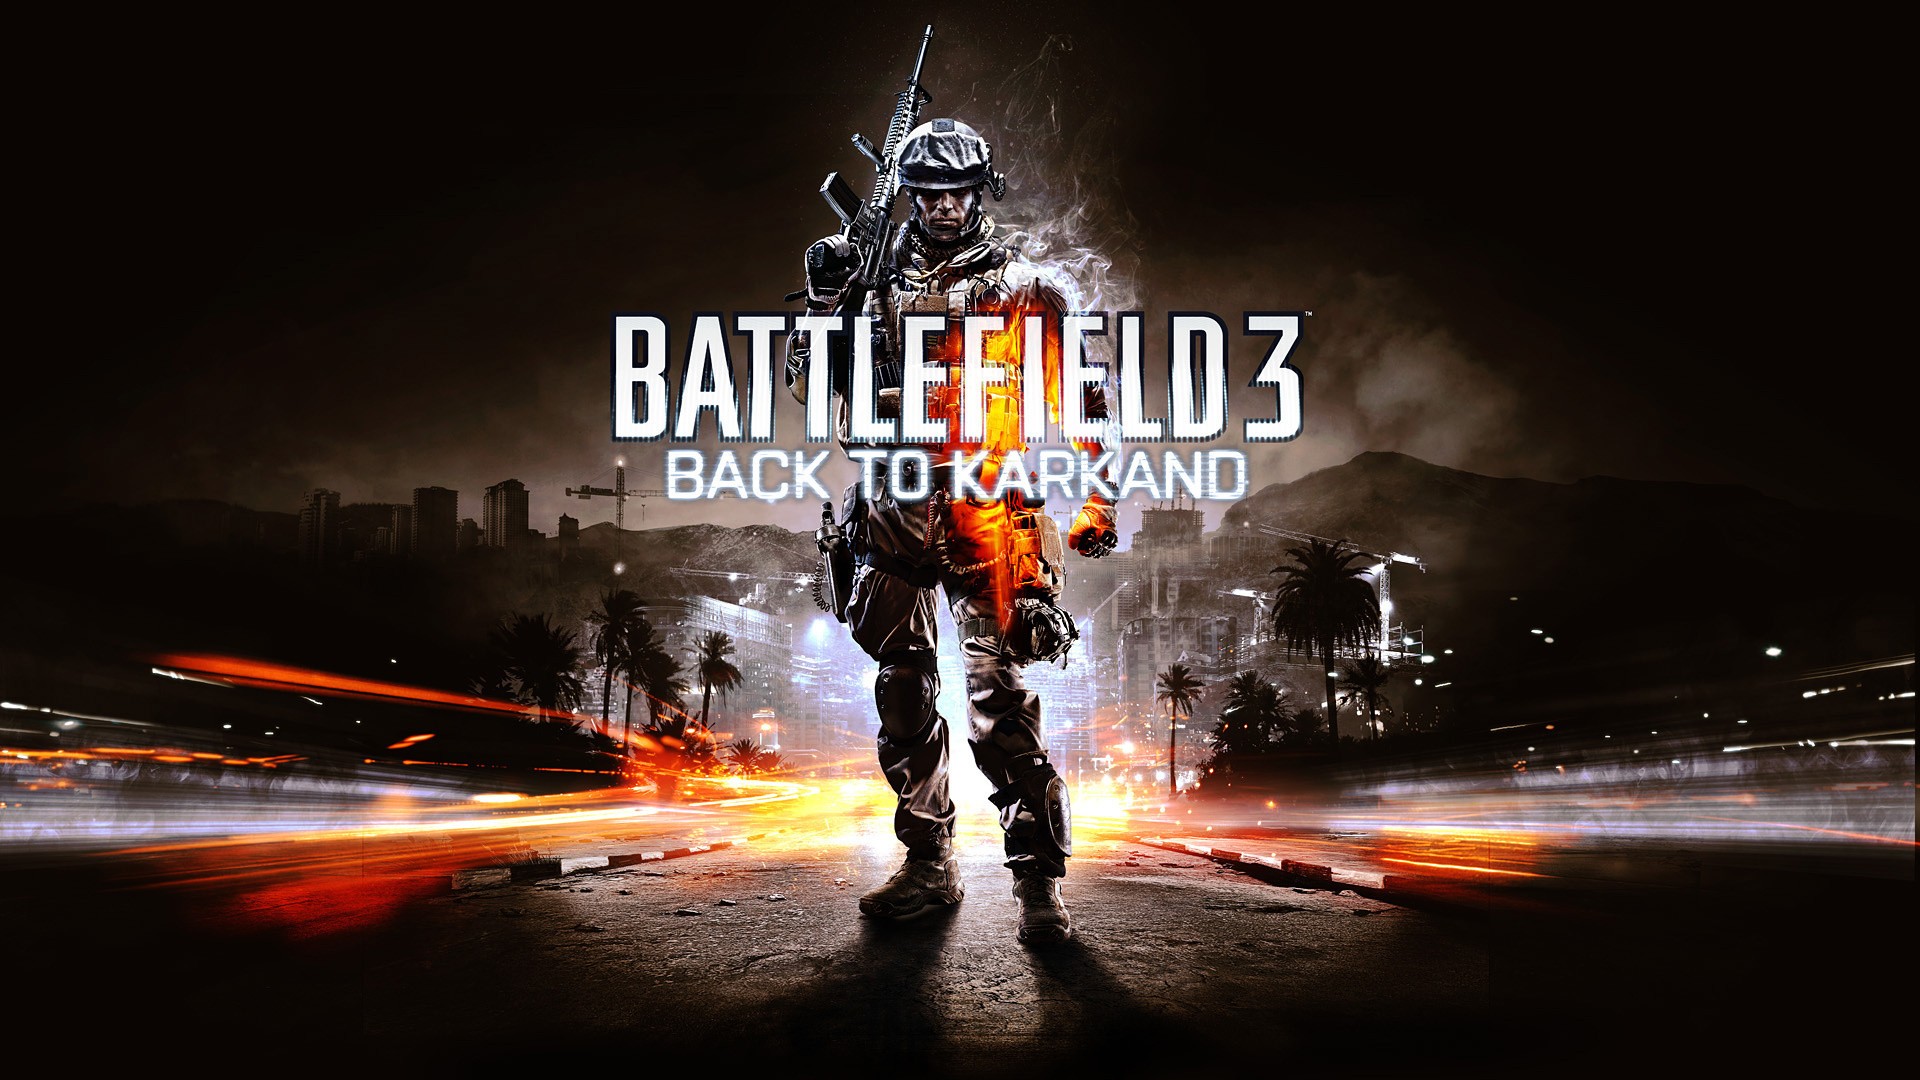 Бесплатное фото Battlefield 3 для рабочего стола